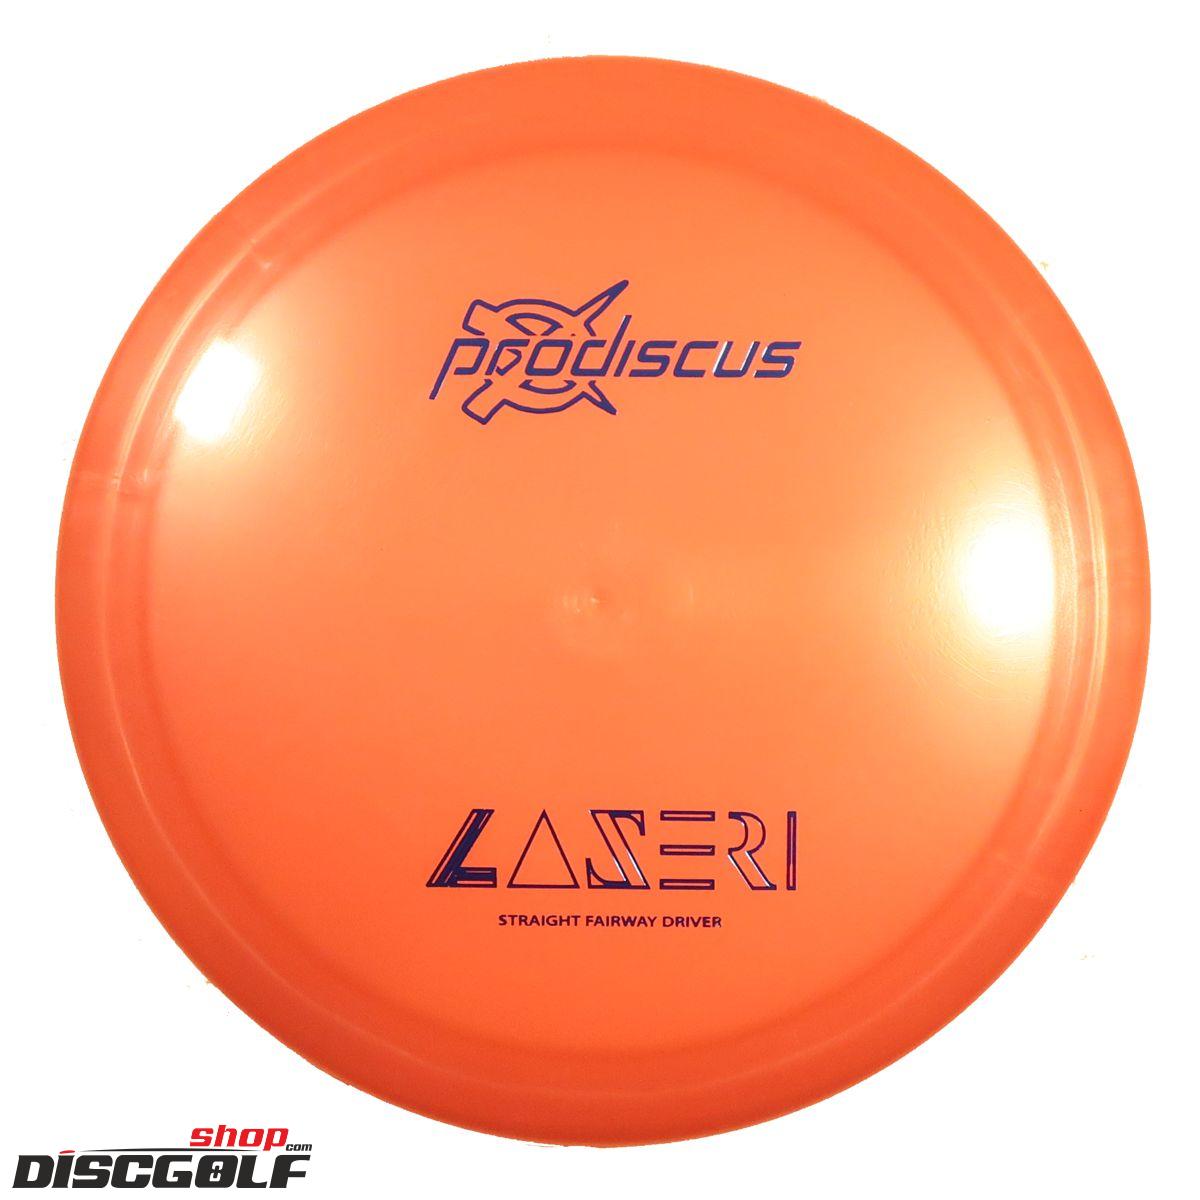 Prodiscus Laseri Premium (discgolf)